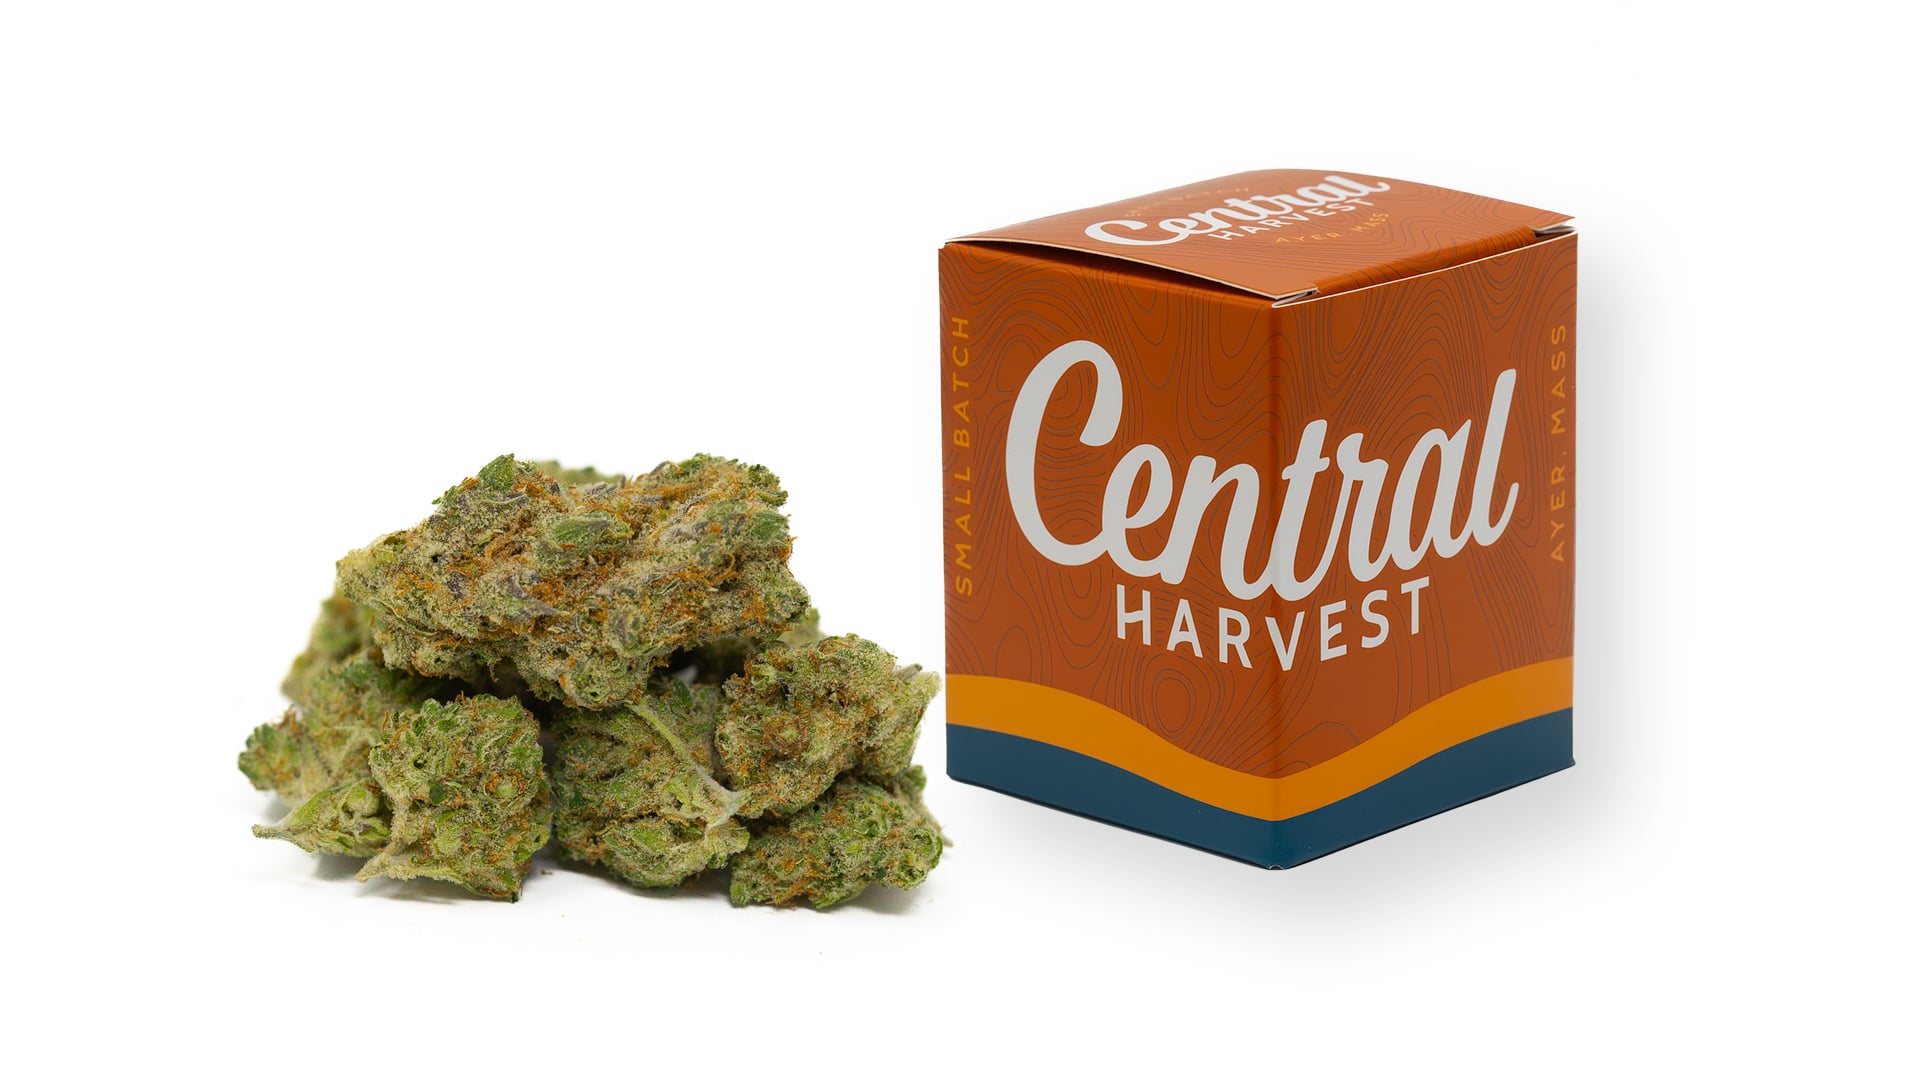 Gilz Nilz is a Hybrid Cannabis strain grown by Central Harvest